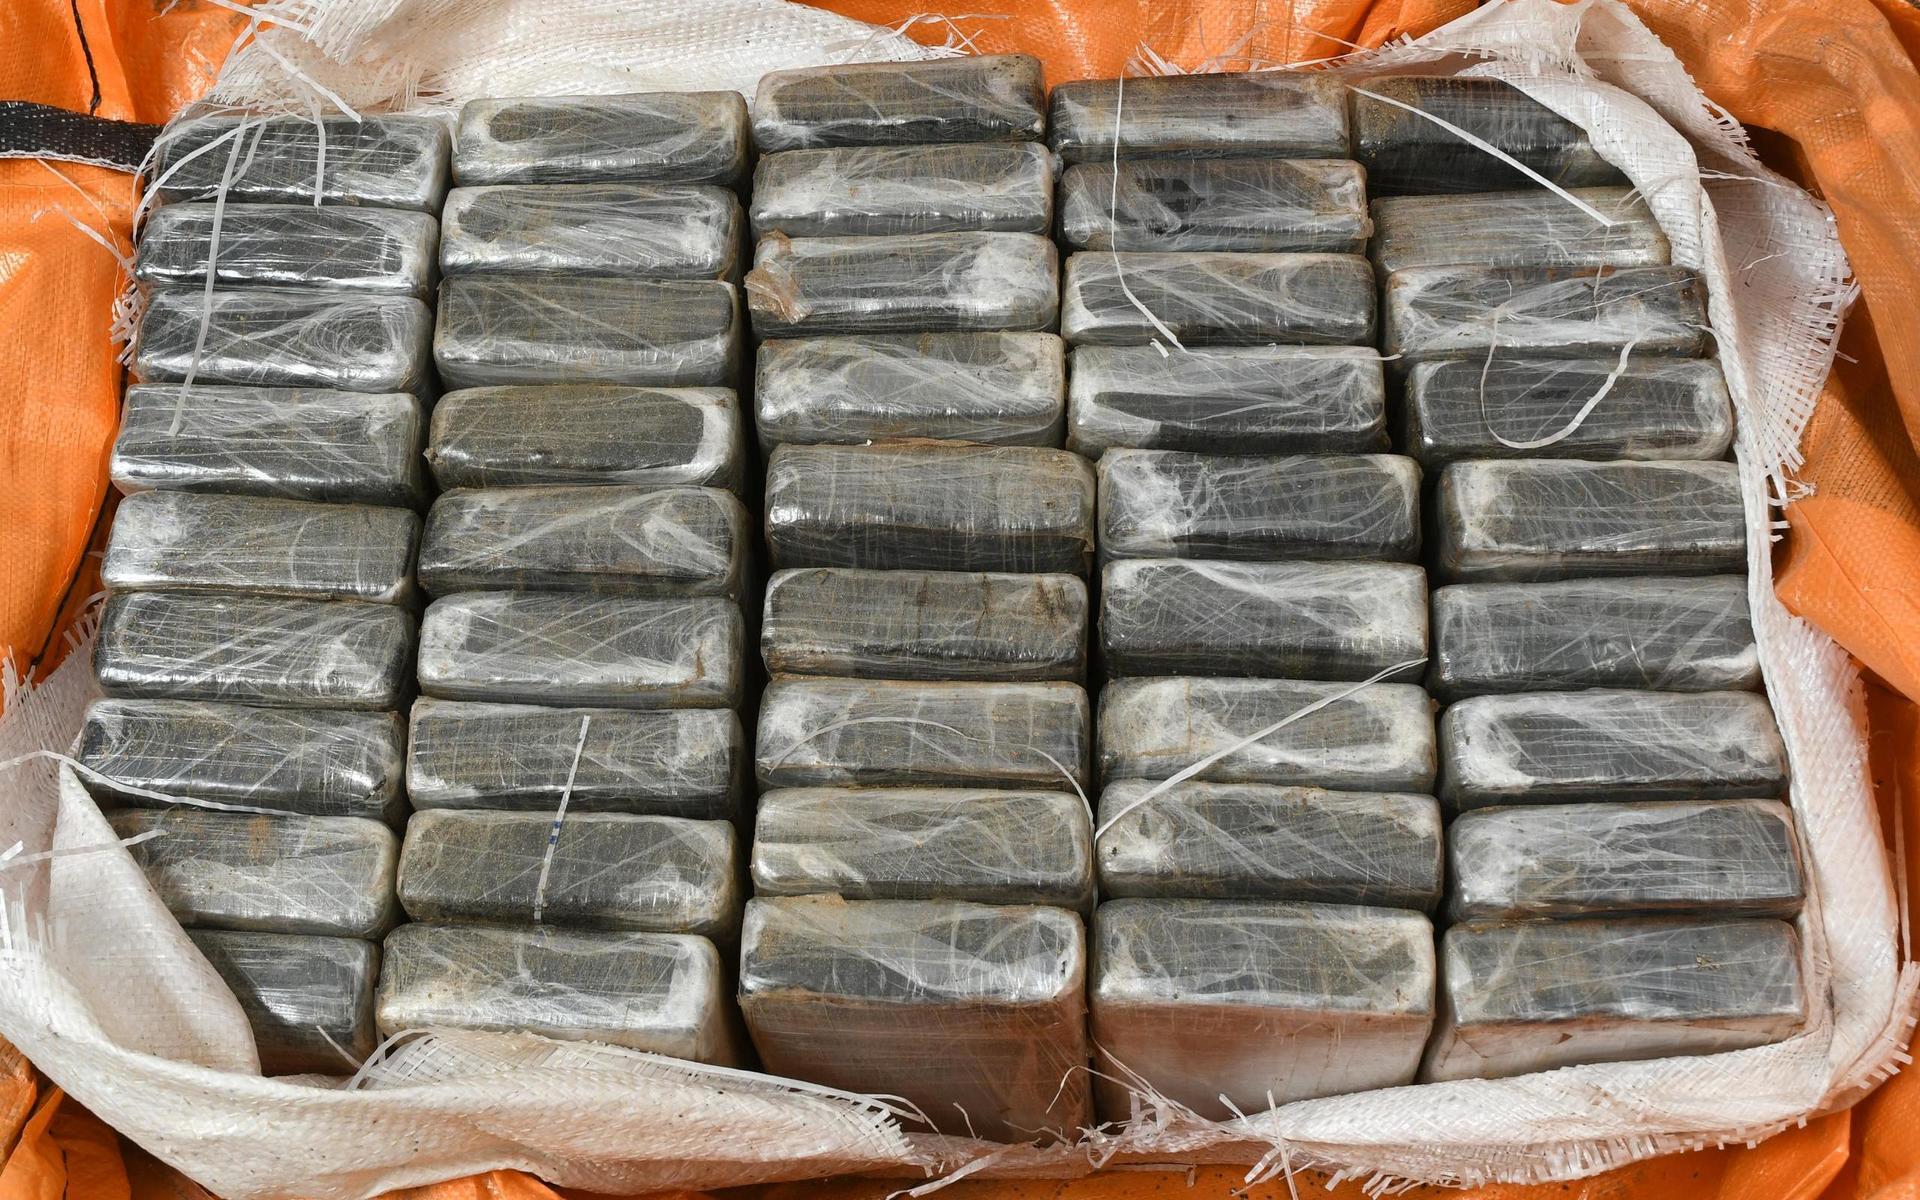 I säckarna hittades totalt 150 kilo kokain – i en av dem fanns det kokain med en renhetsgrad på cirka 91-94 procent.